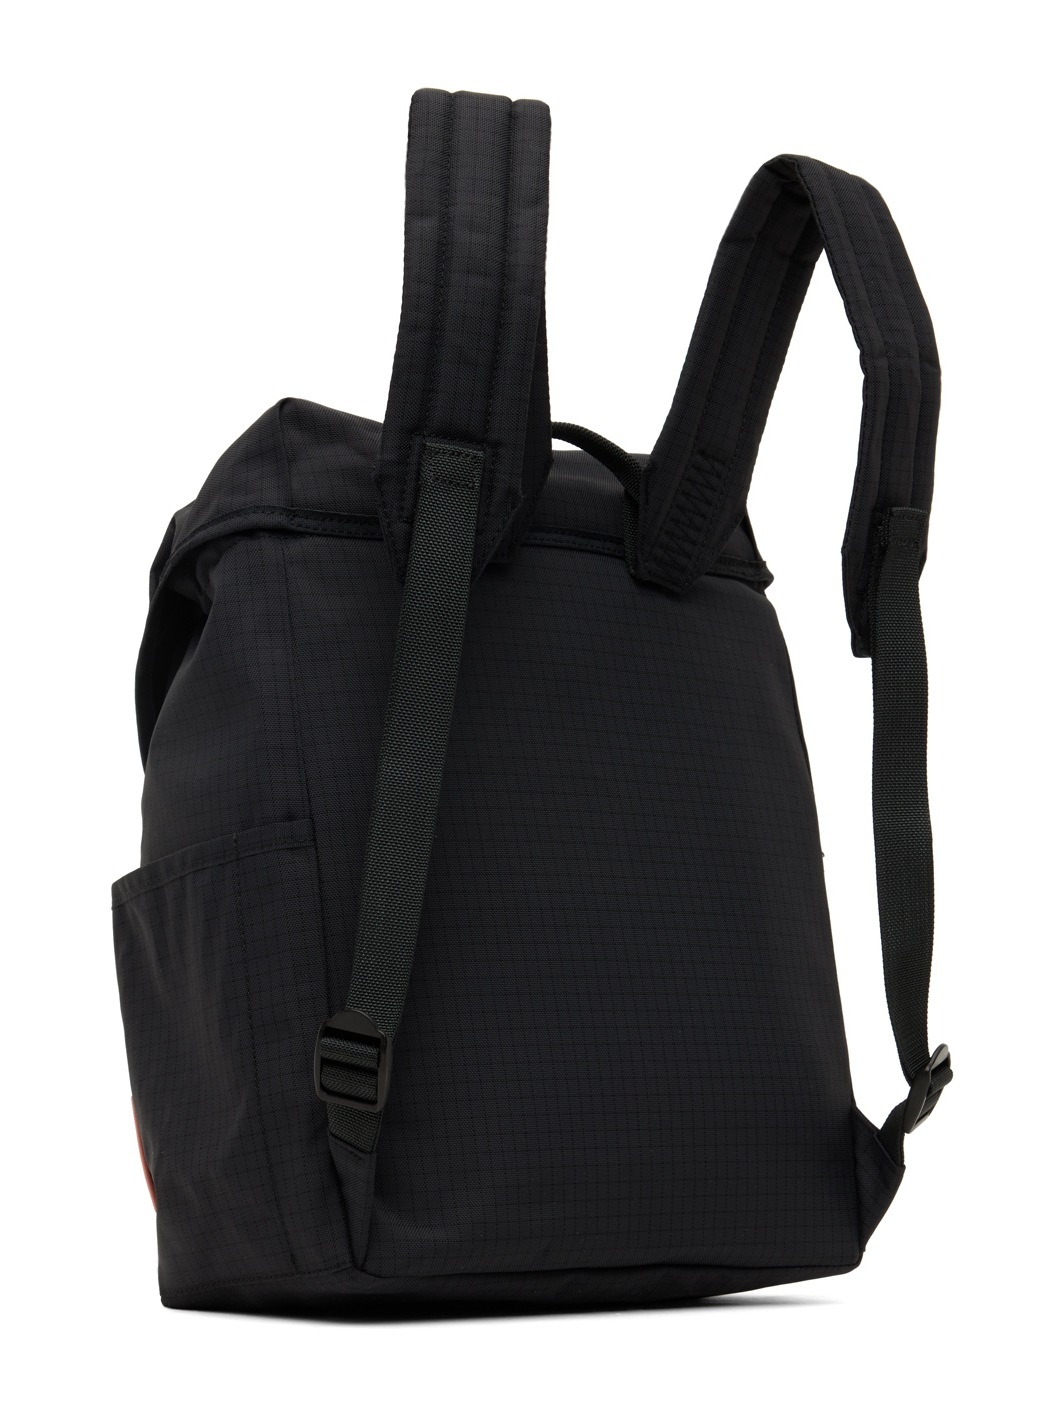 Black Ripstop Nylon Backpack - 3